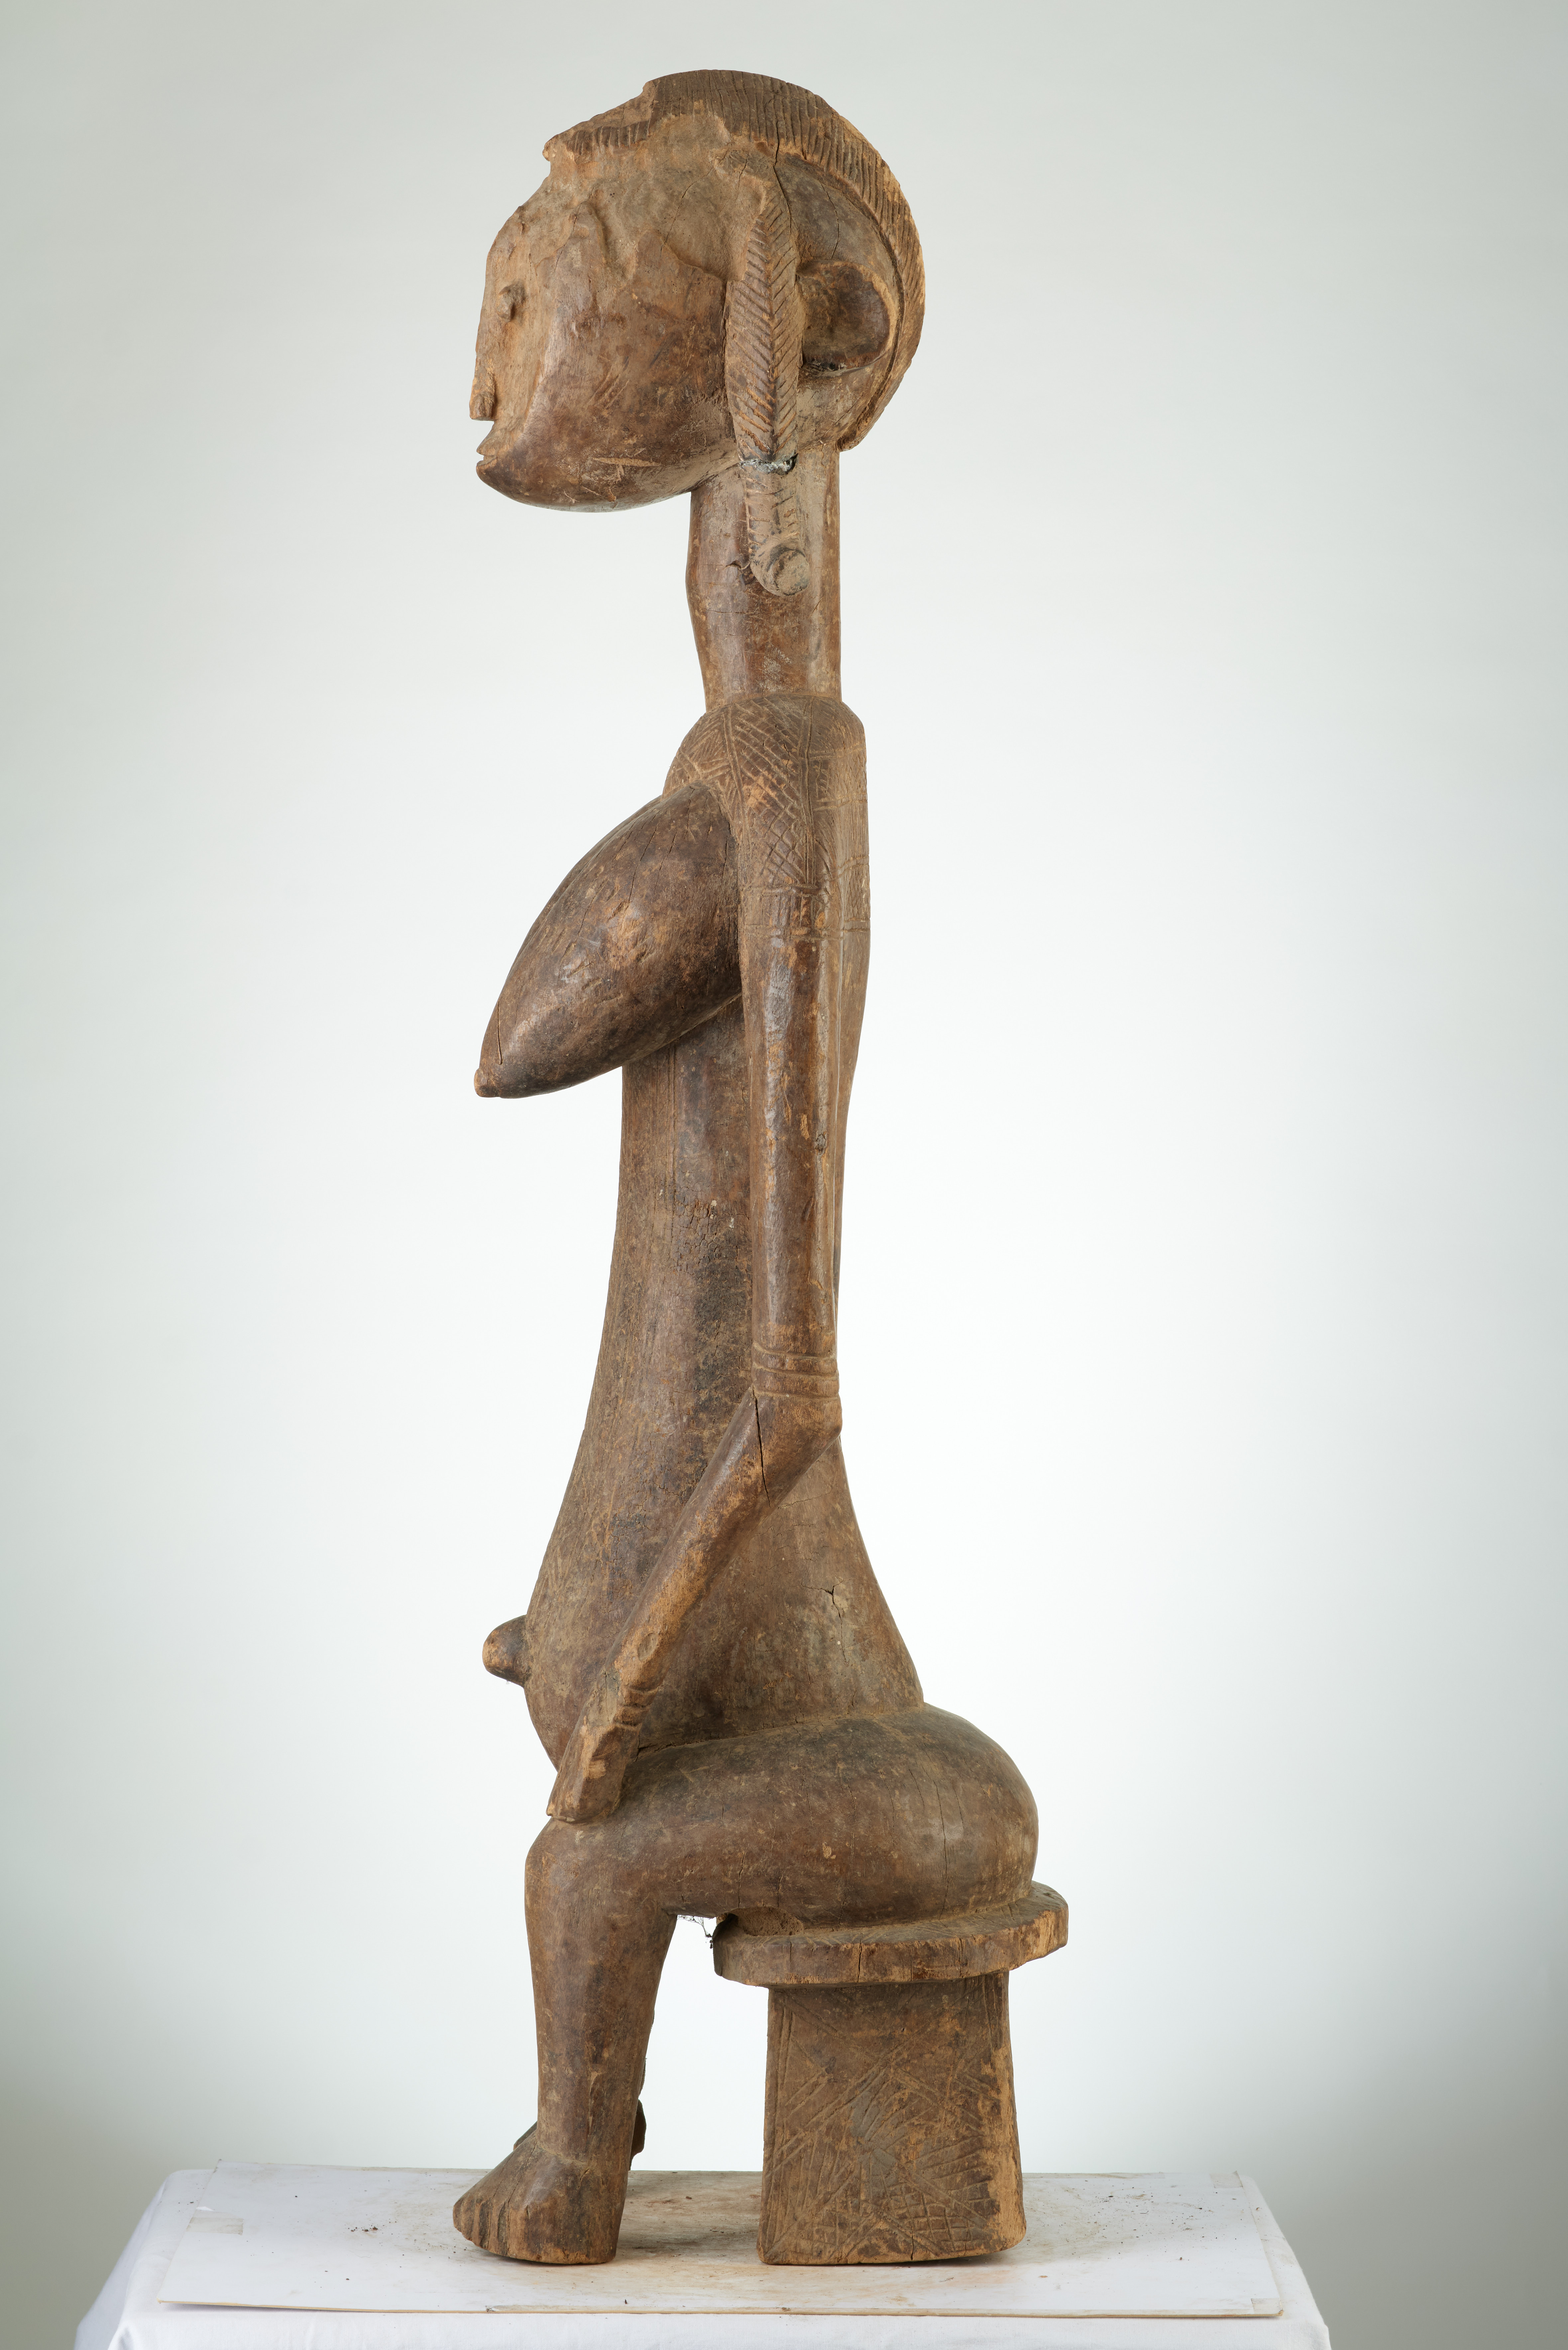 bambara (statue assise), d`afrique : MALI, statuette bambara (statue assise), masque ancien africain bambara (statue assise), art du MALI - Art Africain, collection privées Belgique. Statue africaine de la tribu des bambara (statue assise), provenant du MALI, 1878:Ancêtre Bambara assise les deux mains posés sur les genoux.appelée GUANDOUDOU de la societé GUAN.Une coiffure en forme decrëte.bois érodé début 20eme sc (col Sylla Ousmane Malien )


Bambara voorouder neerzittend met de twee handen op haar knieên ,GUANDOUDOU genaamd behorende tot de GUAN societeit.Ze heeft zware borsten,De haartooi is in kamvorm.Geerodeerd hout .Begin 20ste eeuw.. art,culture,masque,statue,statuette,pot,ivoire,exposition,expo,masque original,masques,statues,statuettes,pots,expositions,expo,masques originaux,collectionneur d`art,art africain,culture africaine,masque africain,statue africaine,statuette africaine,pot africain,ivoire africain,exposition africain,expo africain,masque origina africainl,masques africains,statues africaines,statuettes africaines,pots africains,expositions africaines,expo africaines,masques originaux  africains,collectionneur d`art africain